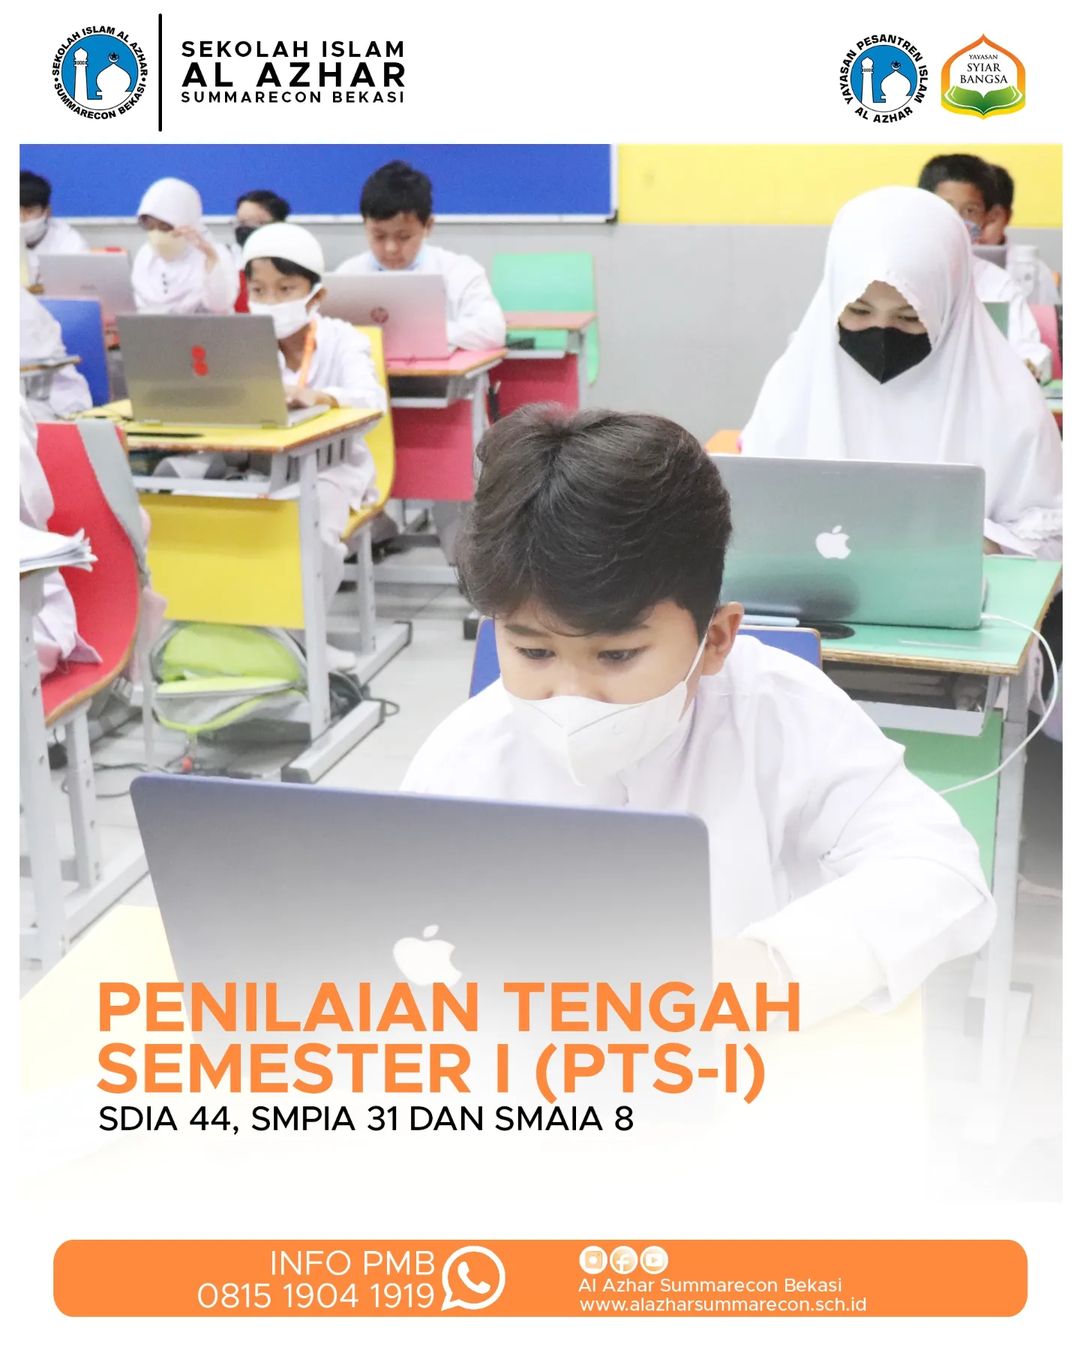 PTS 1 Sekolah Islam Al Azhar Summarecon Bekasi